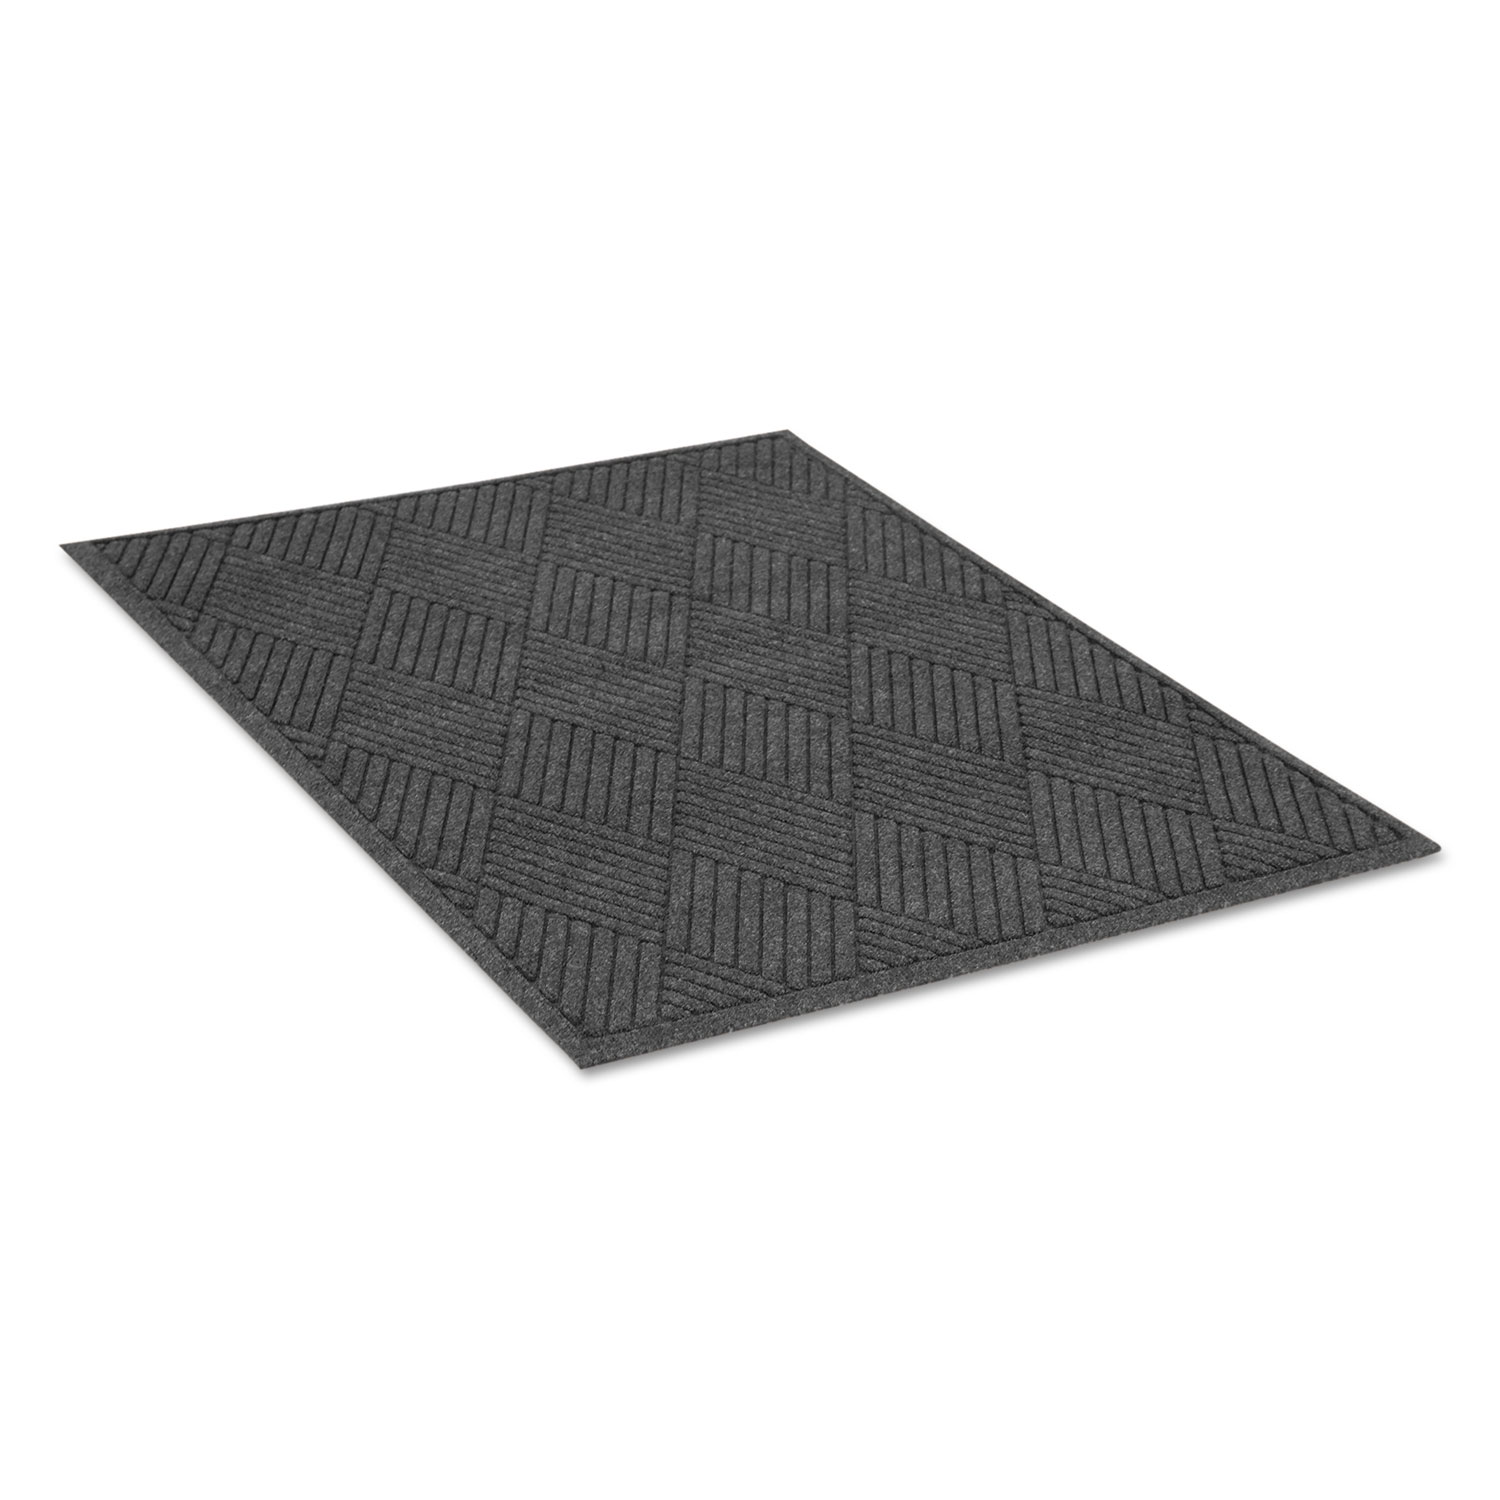  Guardian EGDFB040604 EcoGuard Diamond Floor Mat, Rectangular, 48 x 72, Charcoal (MLLEGDFB040604) 